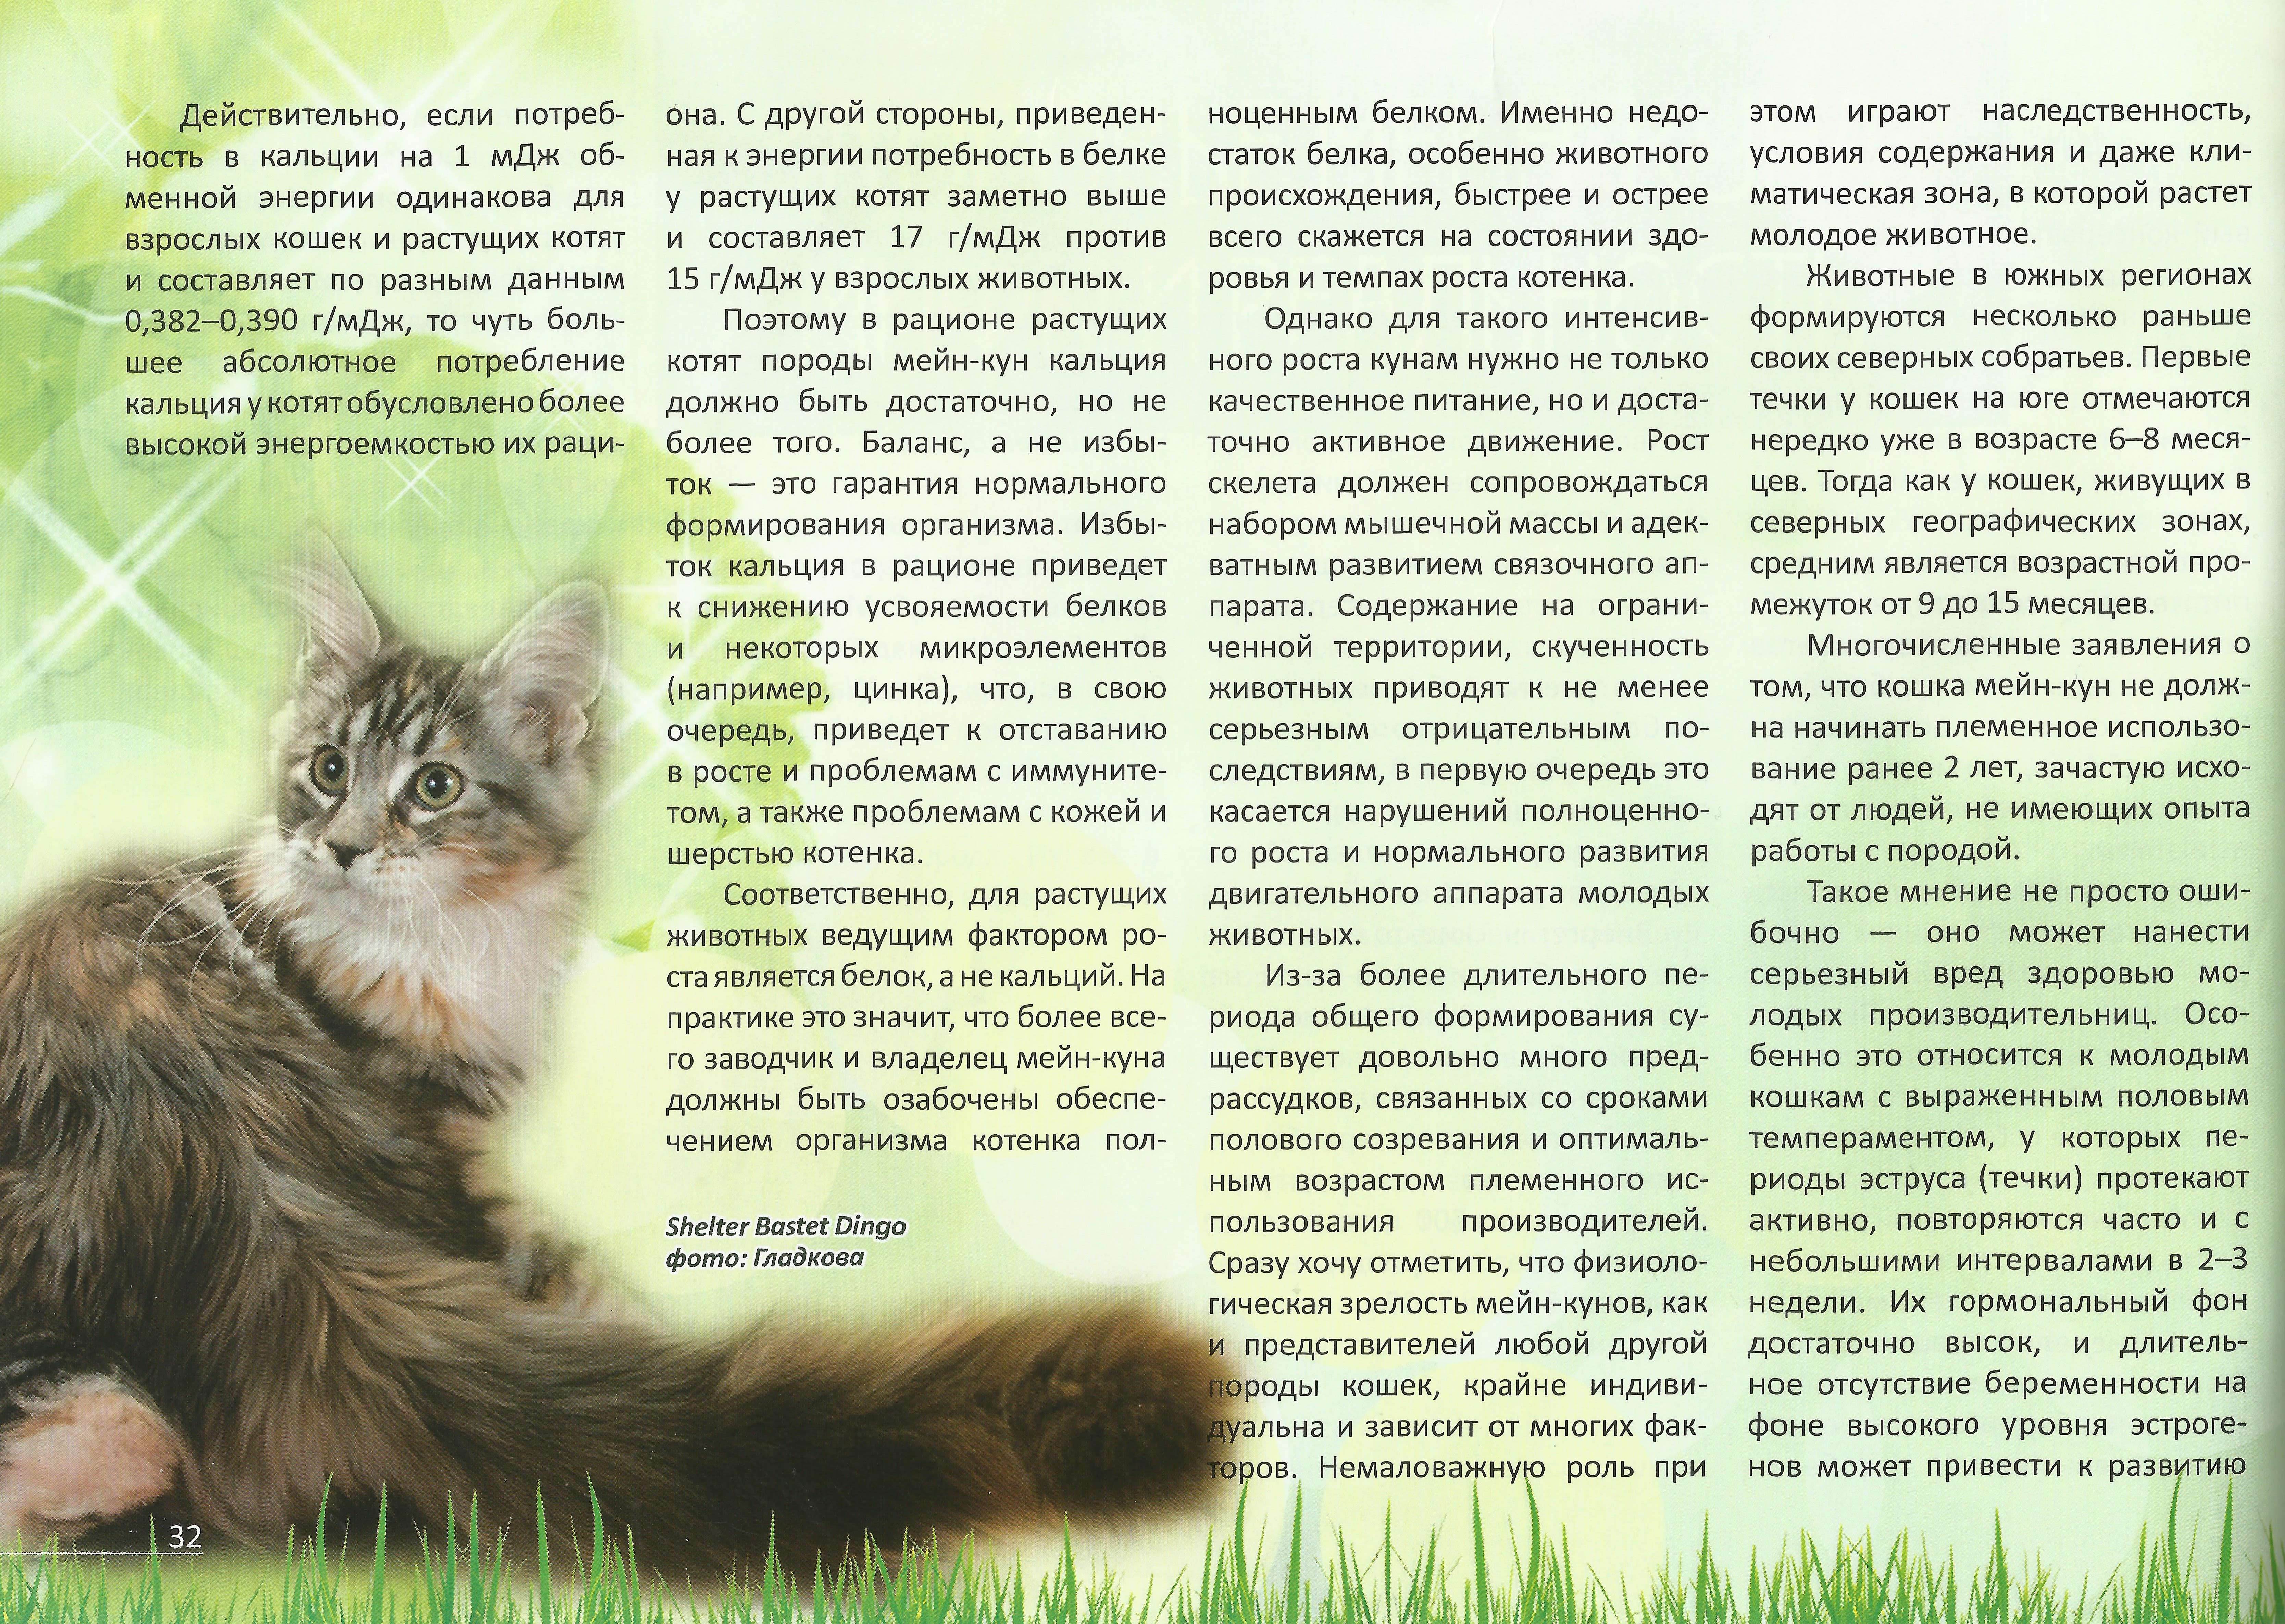 Коты мейн кун: повадки и характеристика породы, особенности содержания и ухода